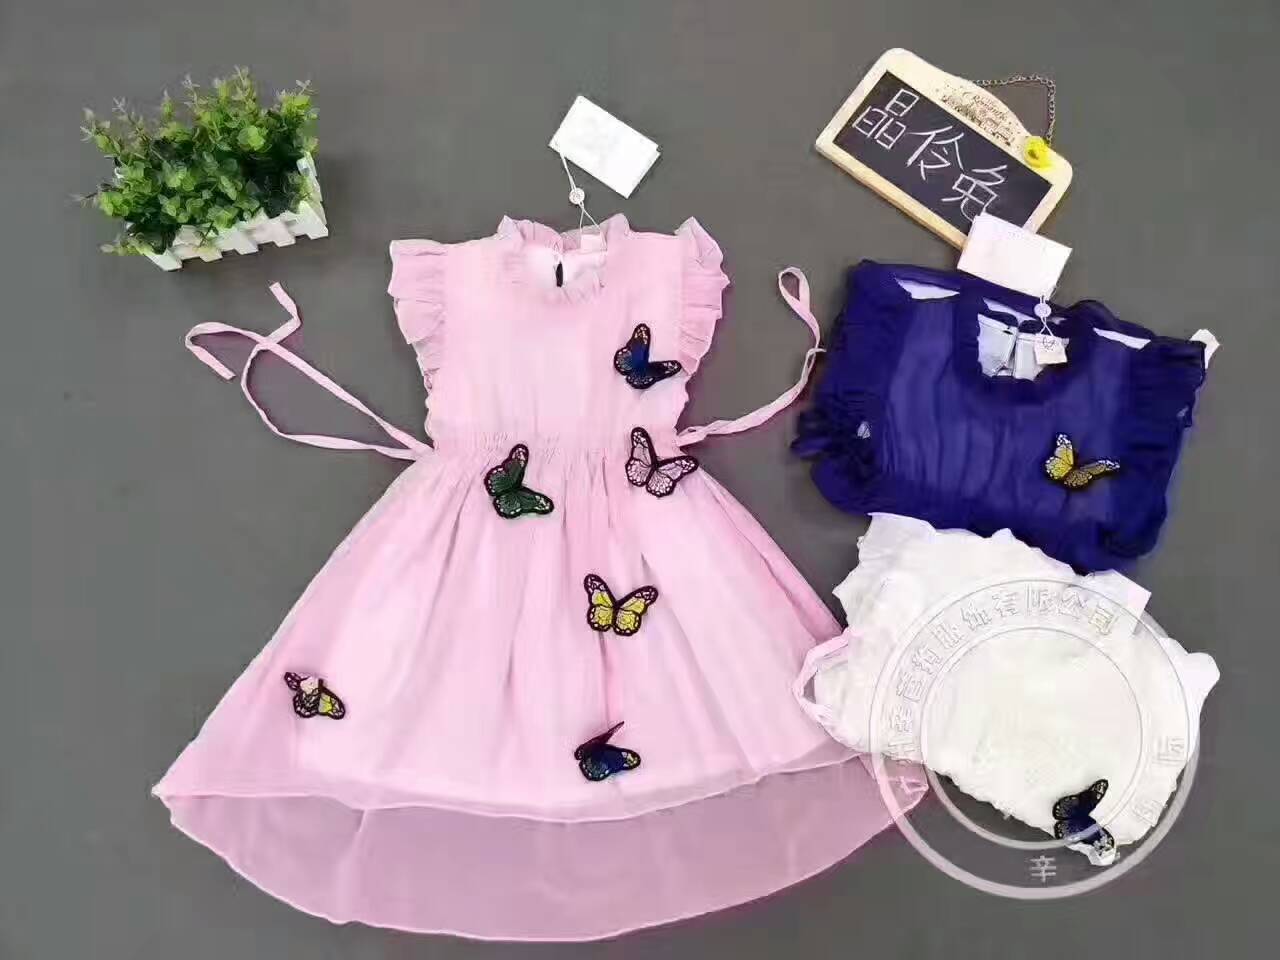 广州辛芭狗服饰之晶伶兔童装品牌2017年夏季新品